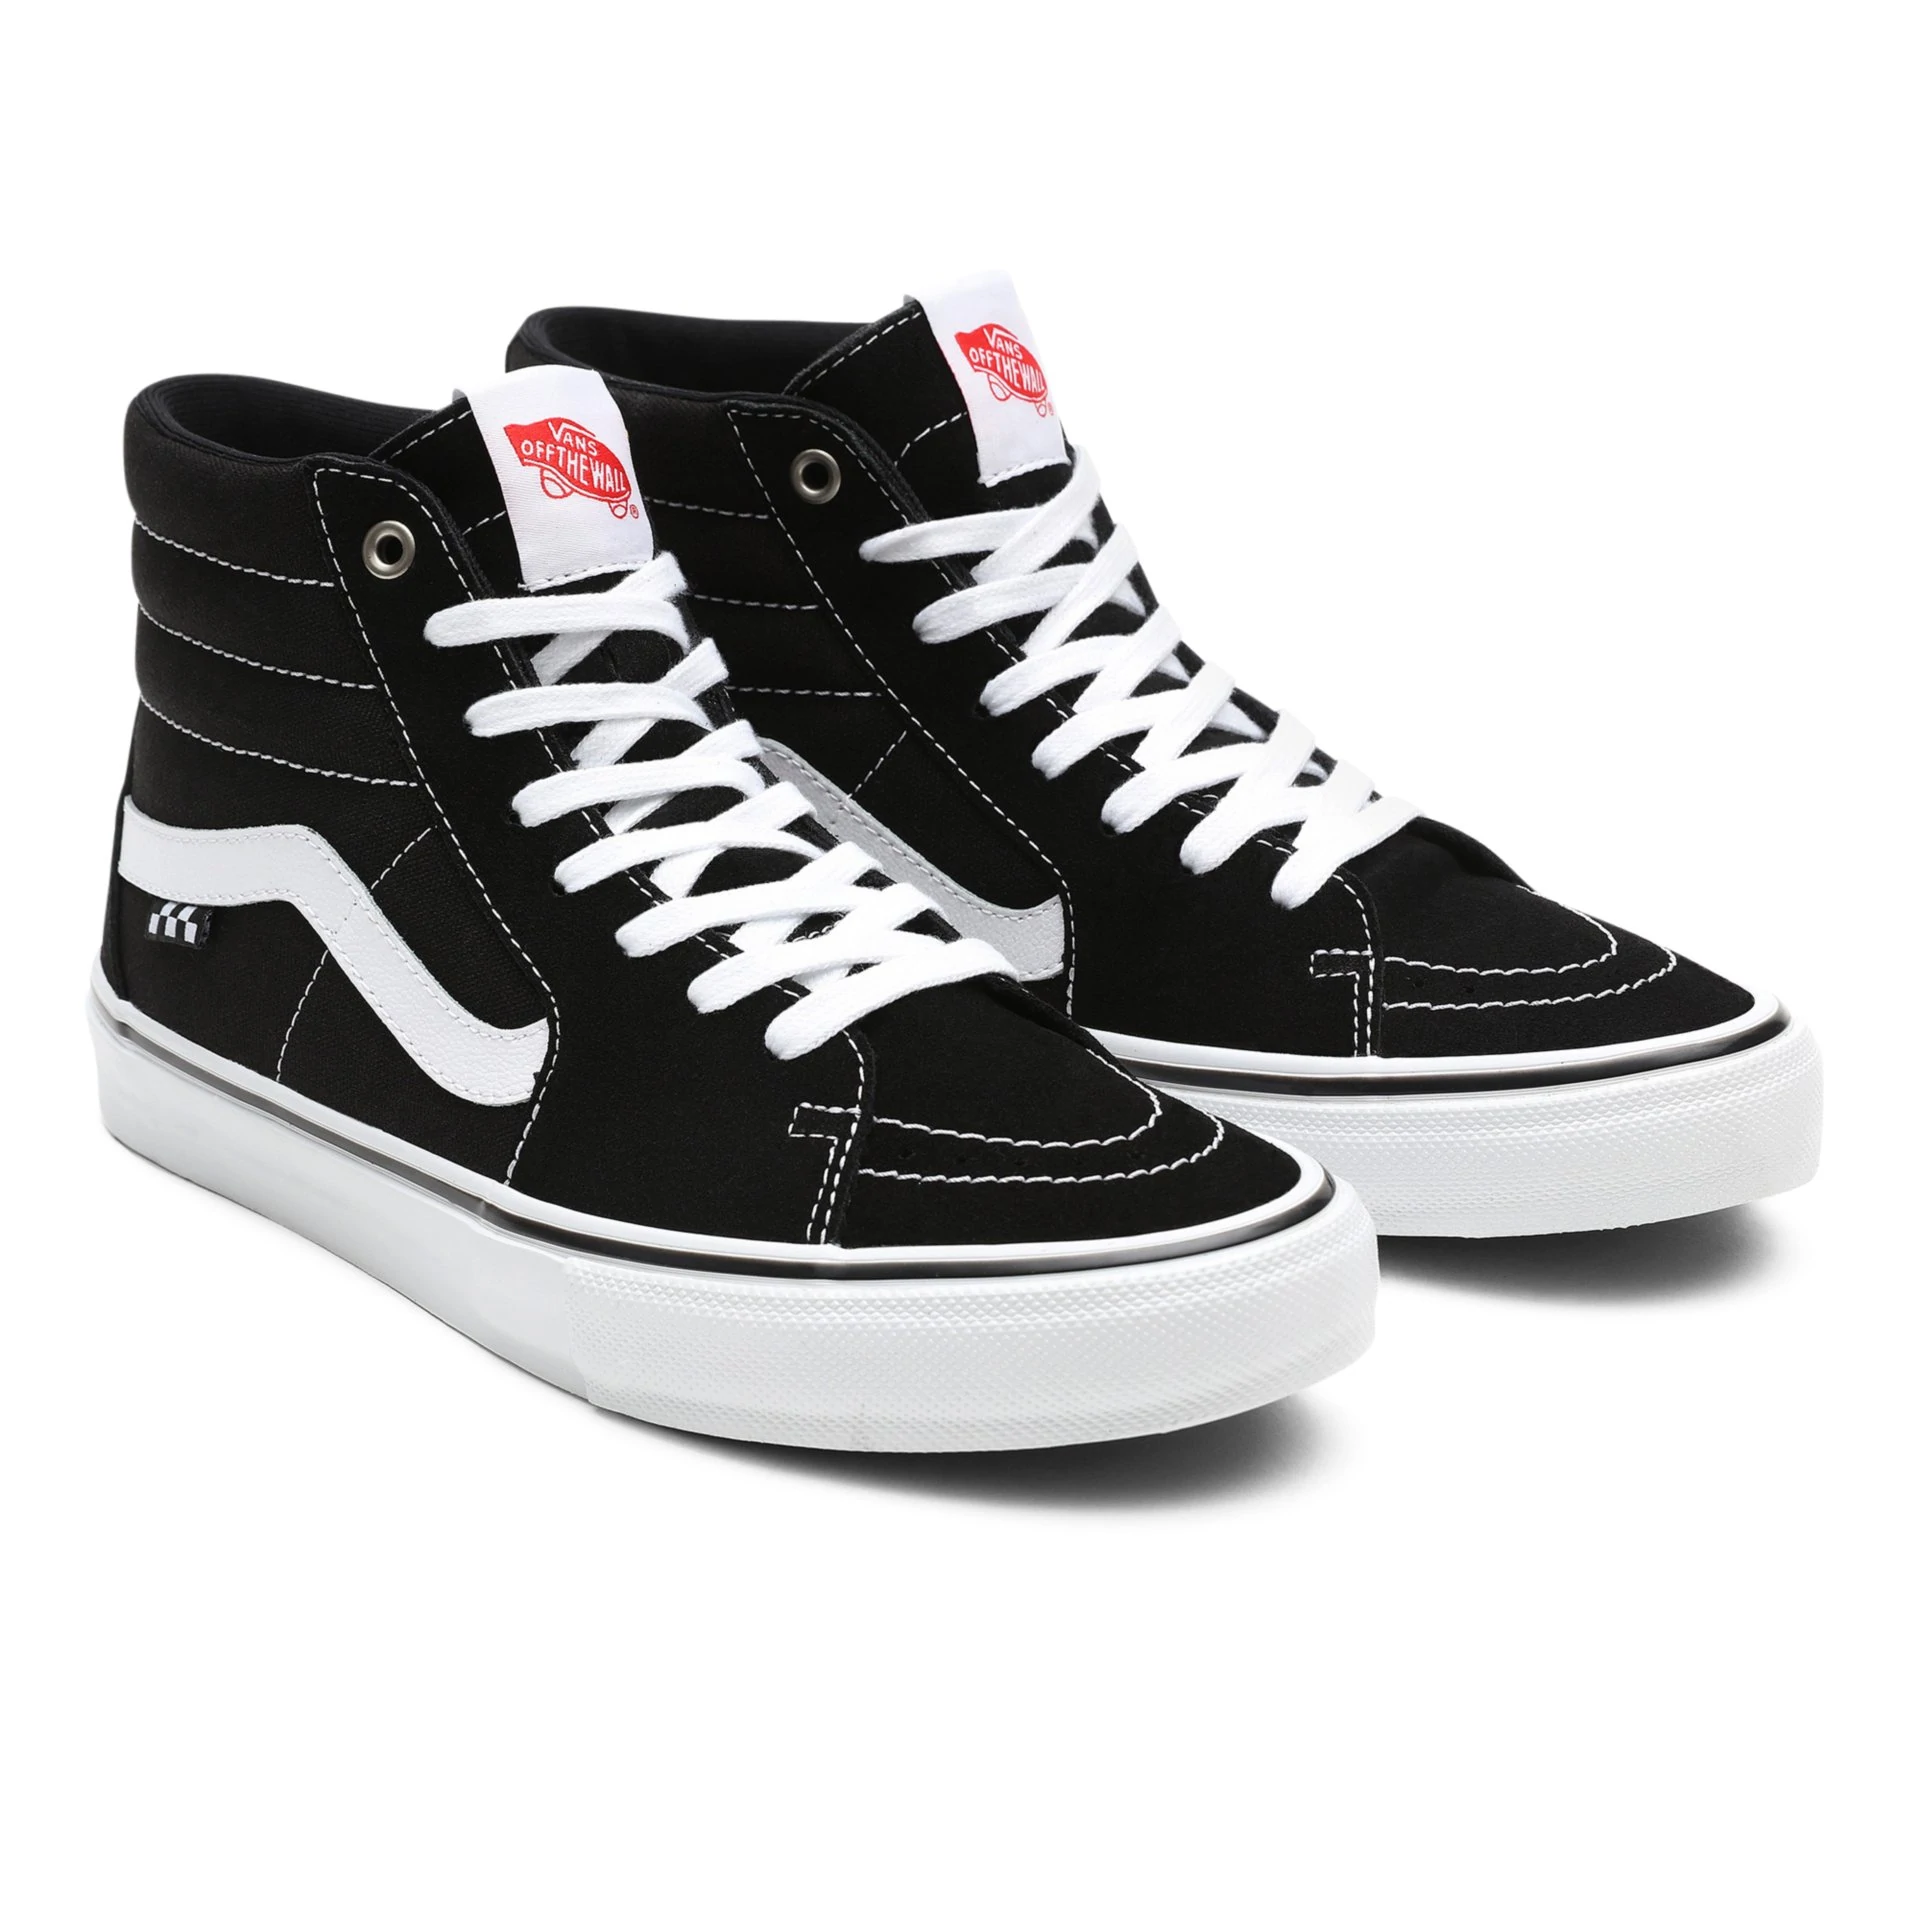 Vans Skate Sk8 Hi schoenen dress black/white